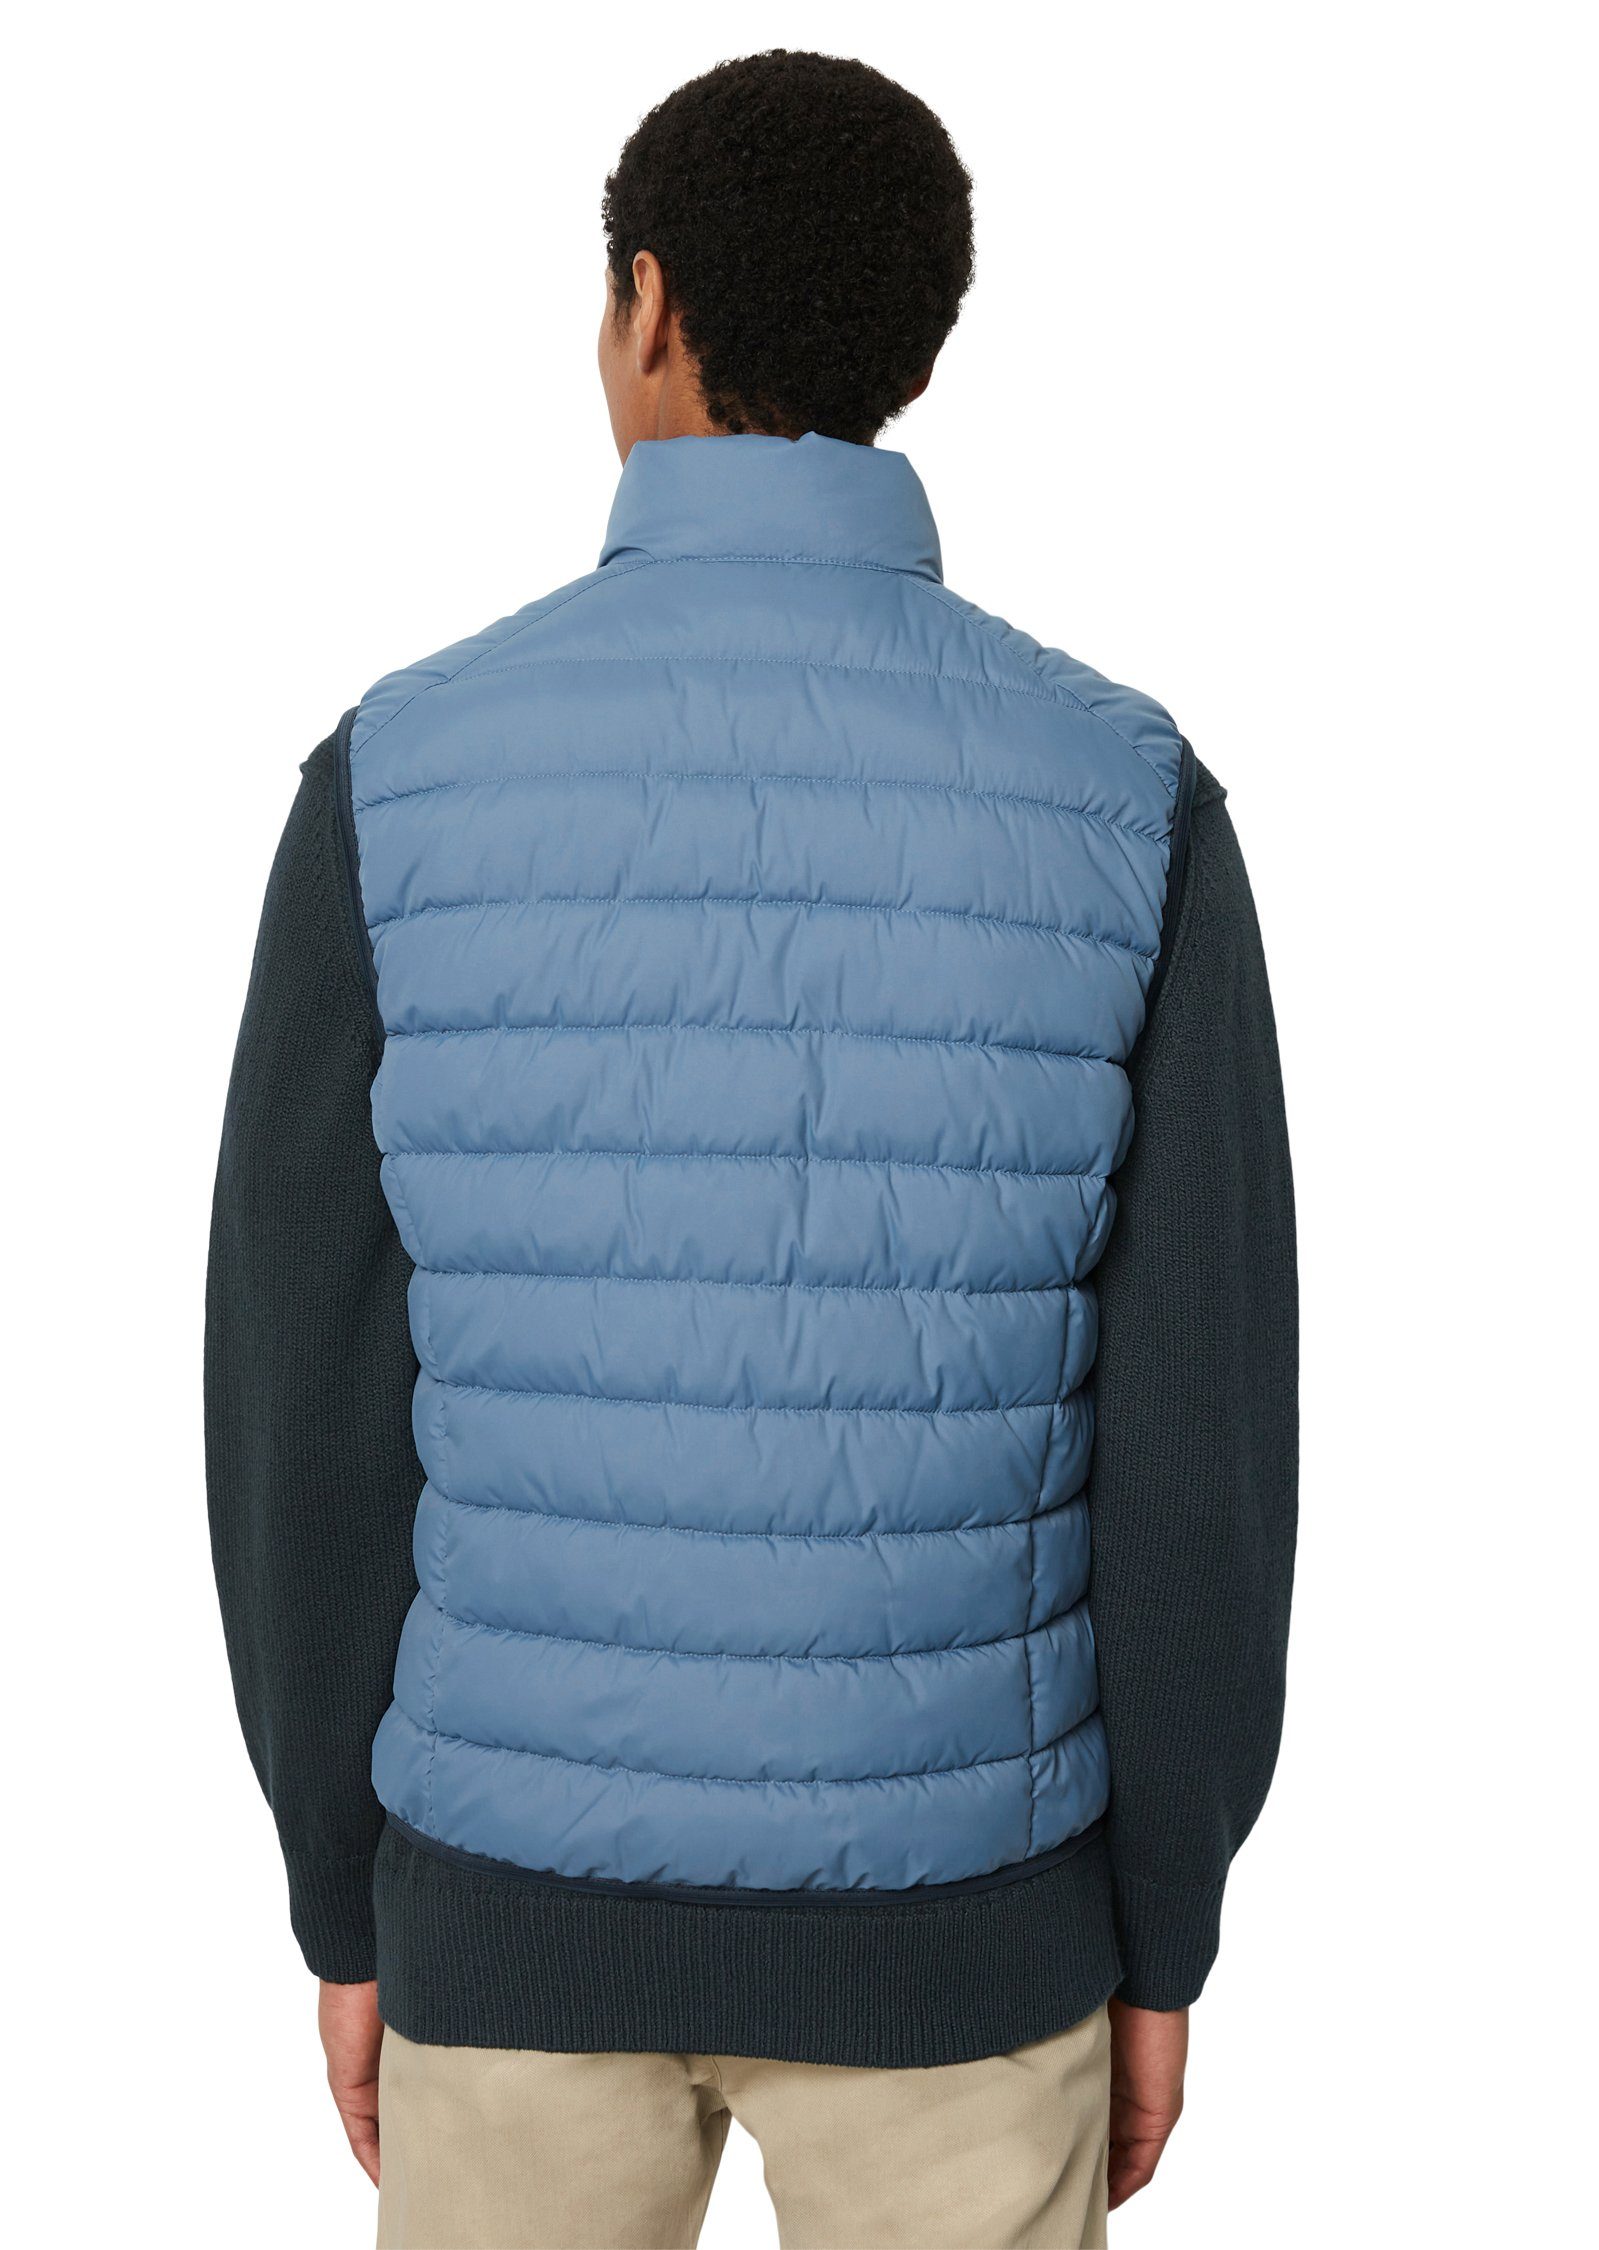 sdnd, O'Polo collar Steppweste wedgewood Vest, mit stand-up Oberfläche Marc wasserabweisender